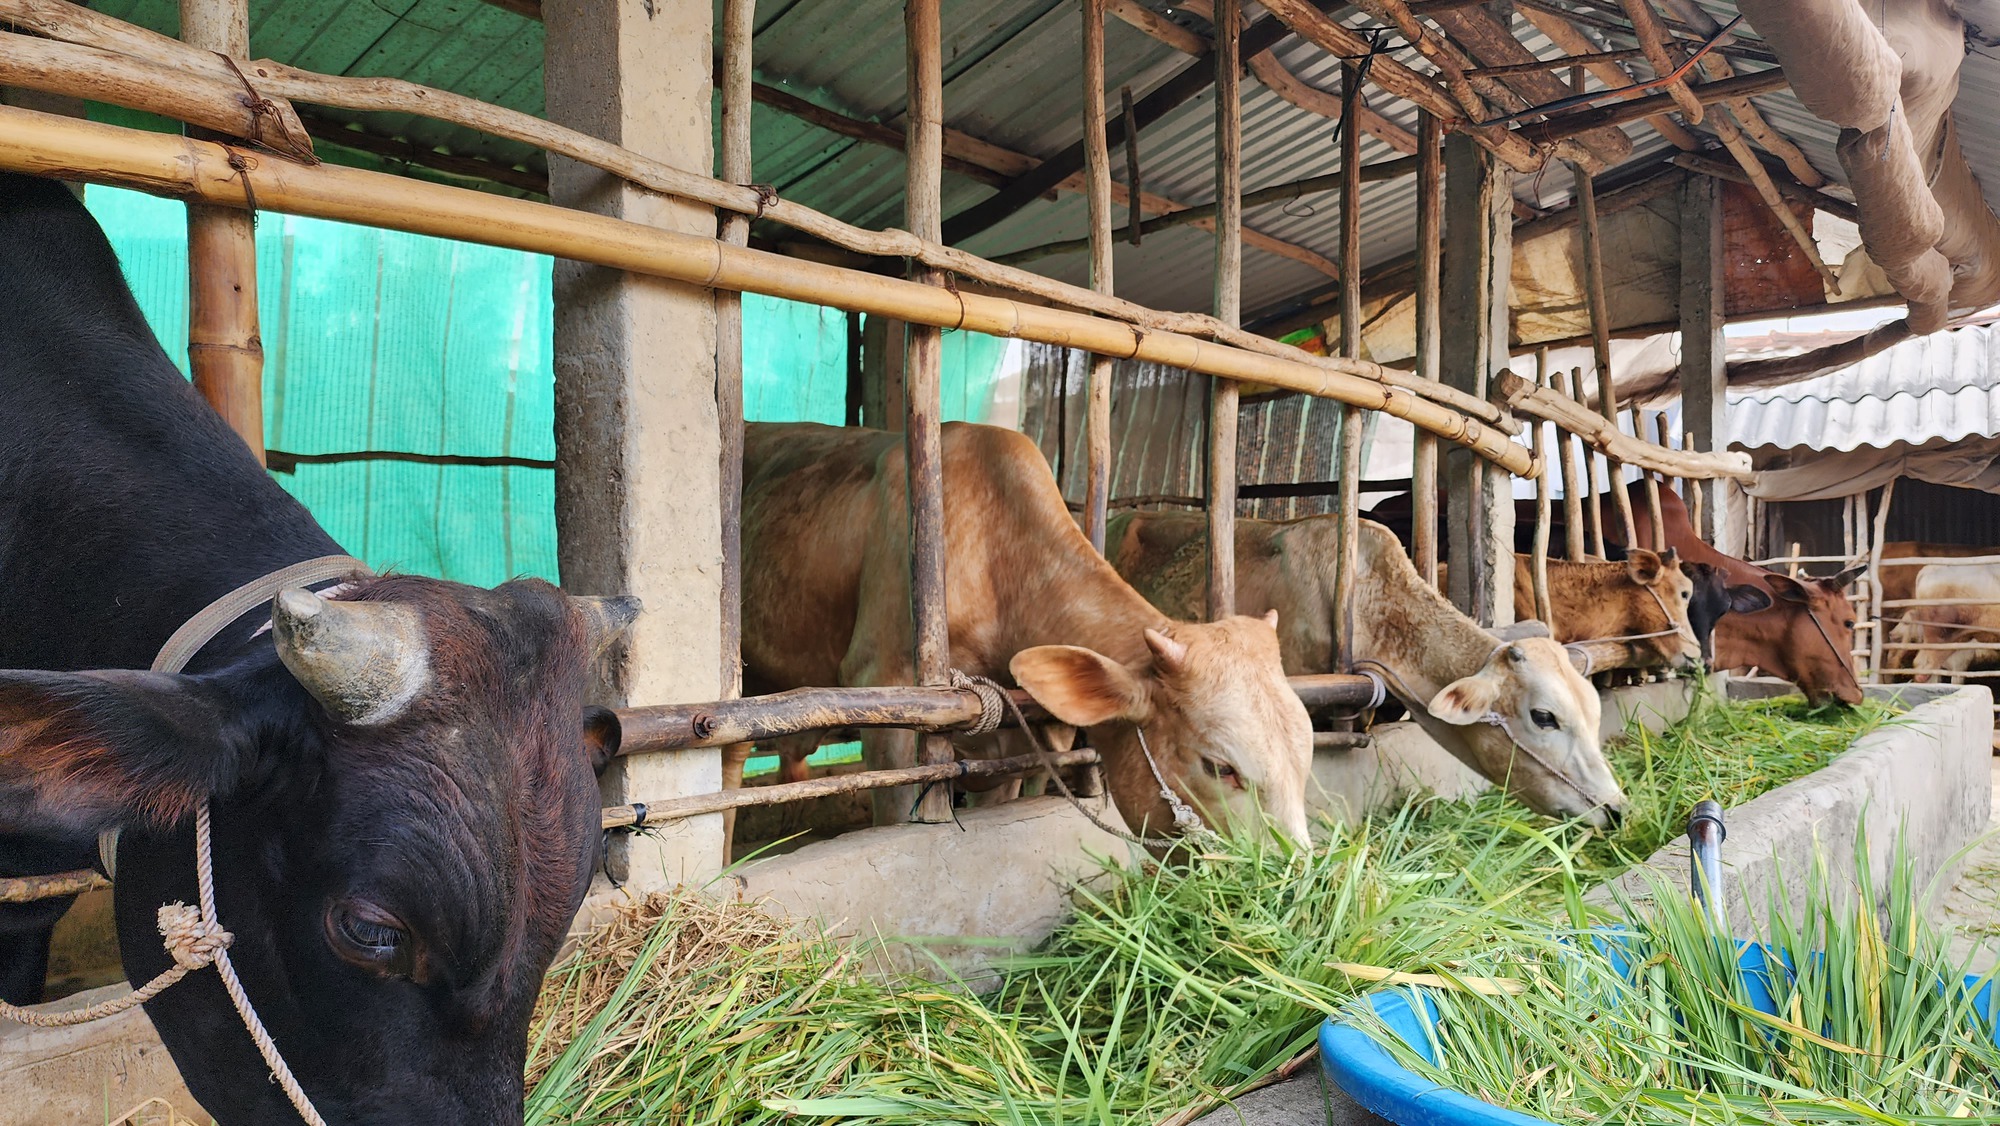 Nhờ Quỹ Hỗ trợ nông dân, hợp tác xã ở Trà Vinh có thêm điều kiện chăn nuôi bò, tăng thêm thu nhập - Ảnh 2.